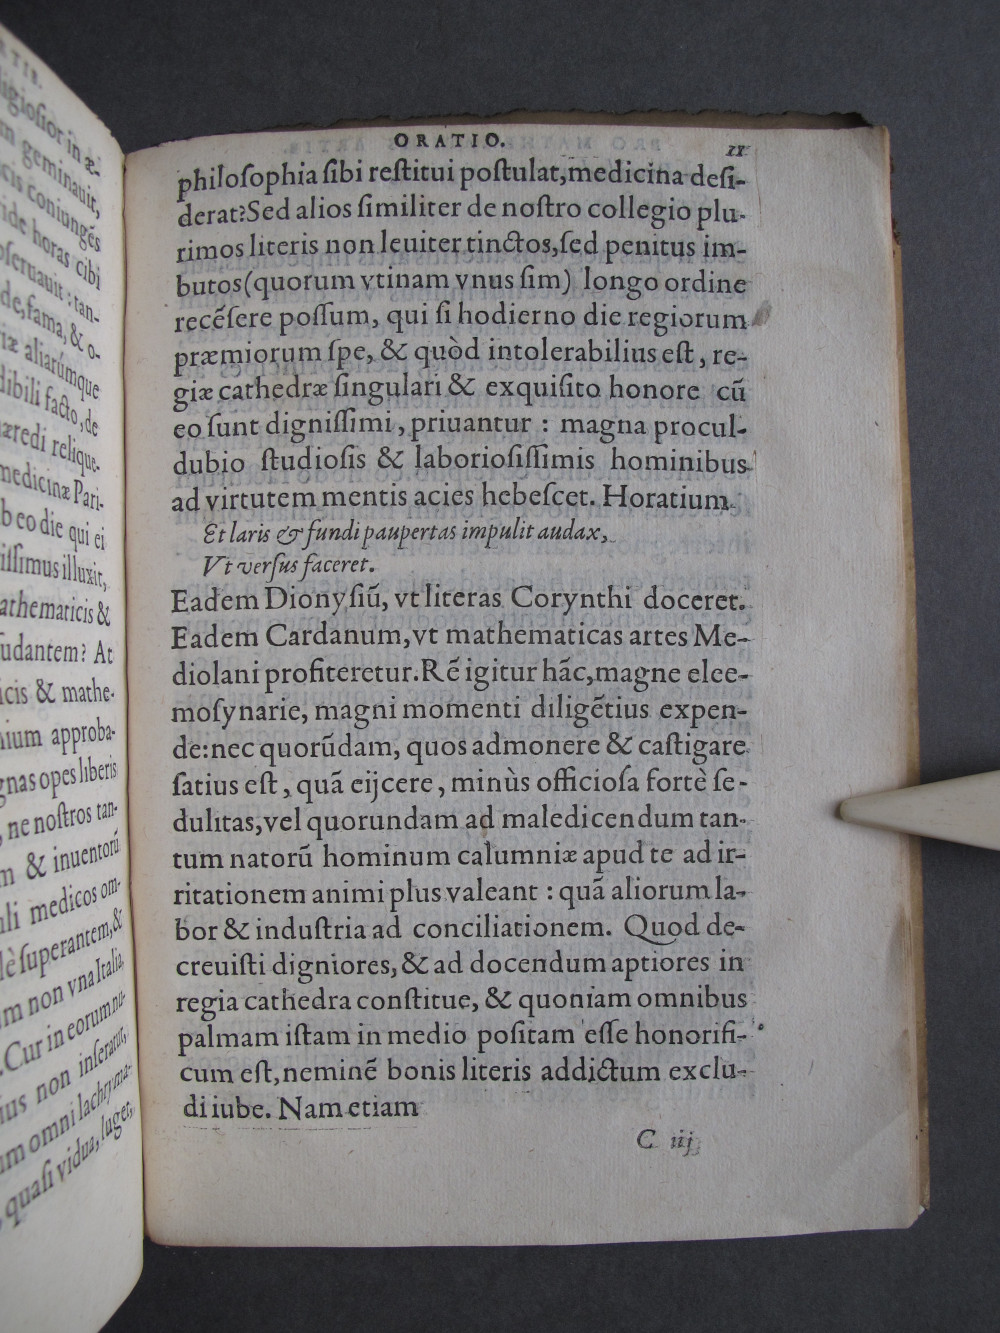 Folio 11 recto